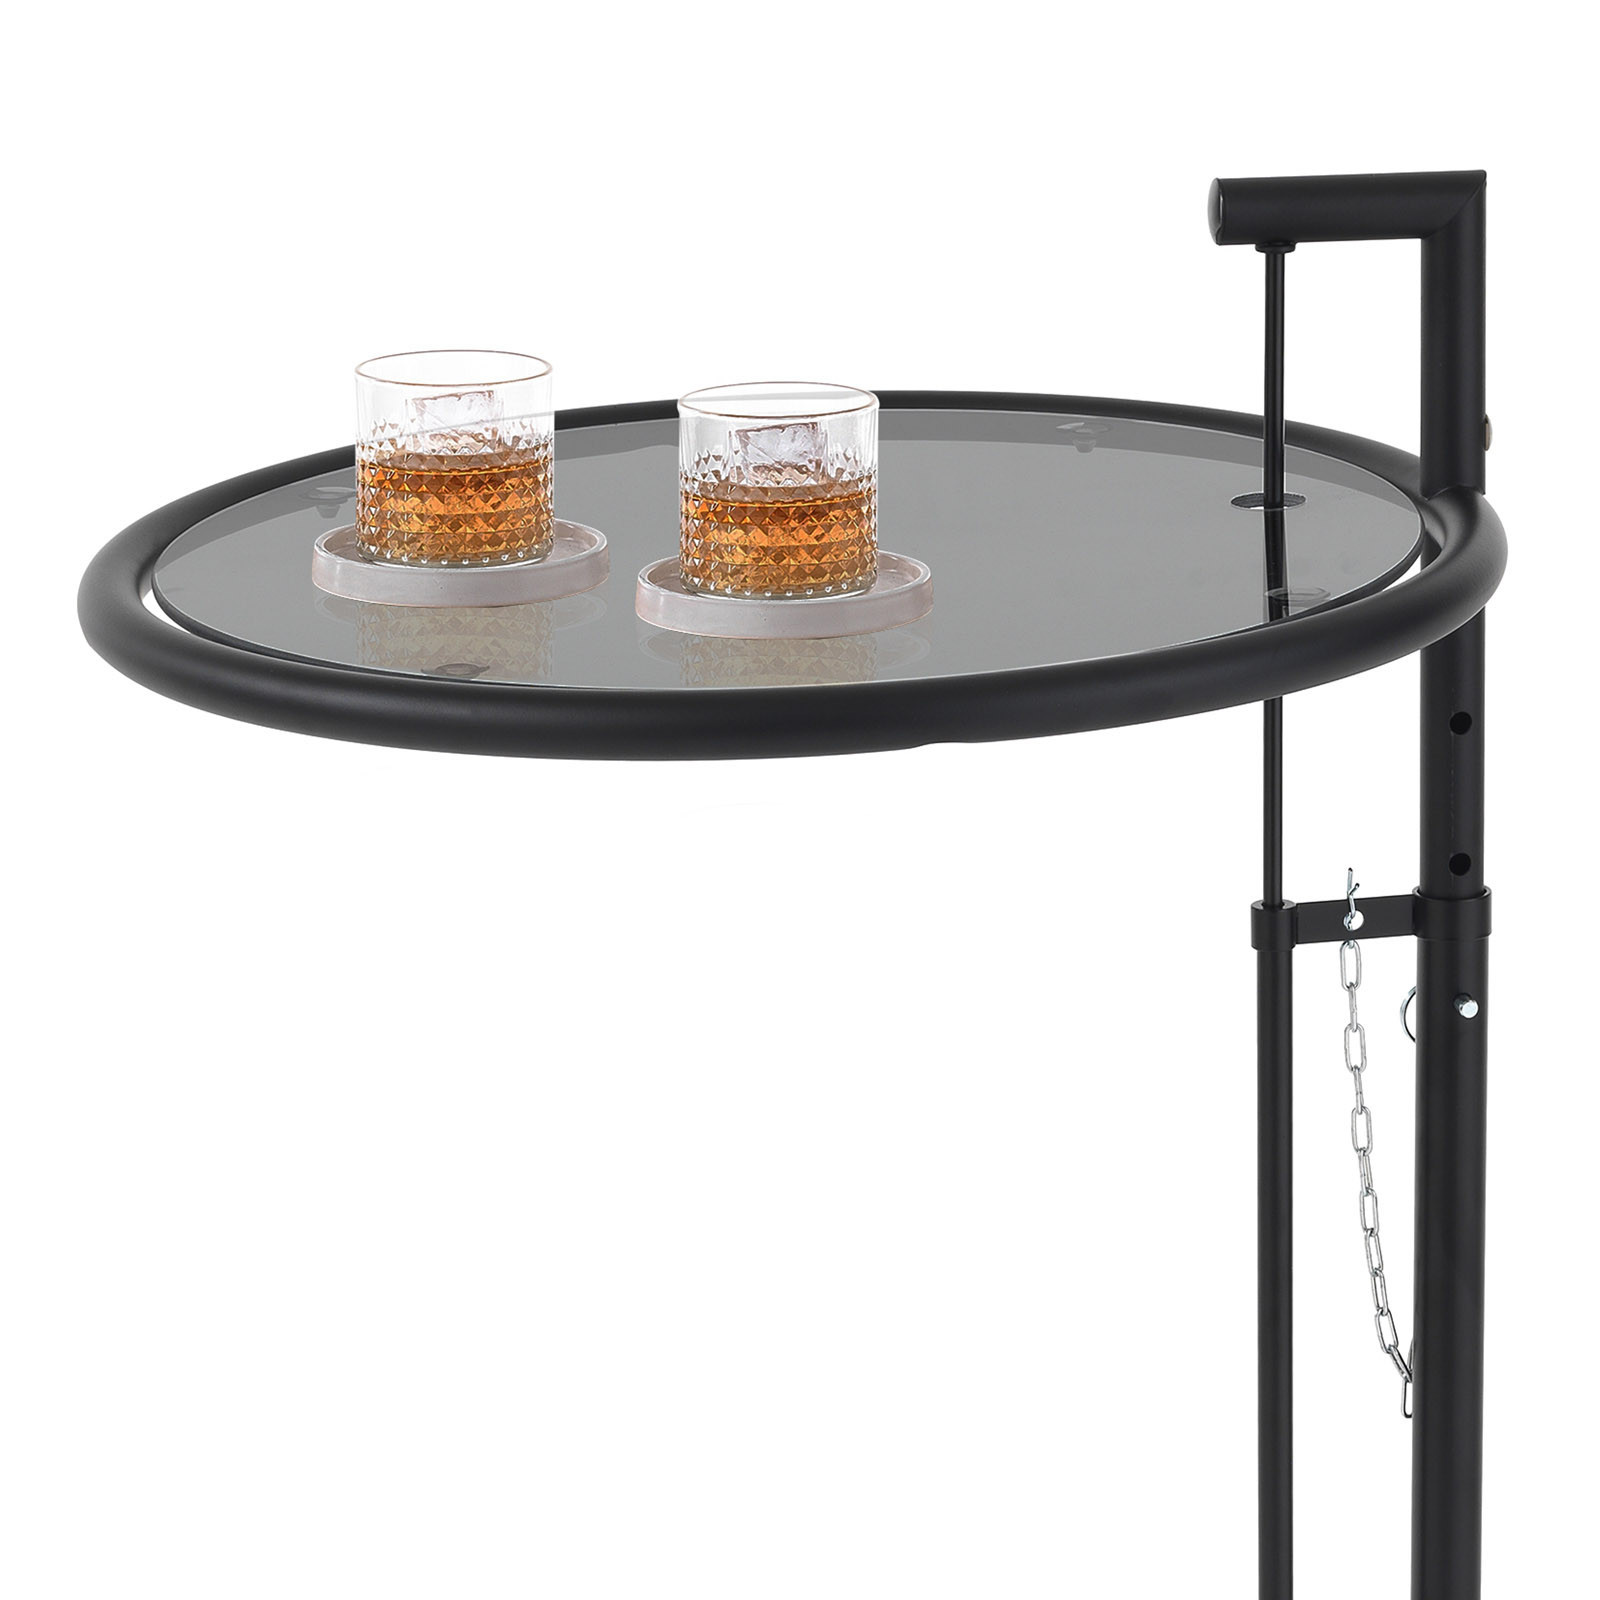 Tavolino Roland Black in vetro temprato fumè e acciaio Nero opaco altezza regolabile, diametro 48 cm